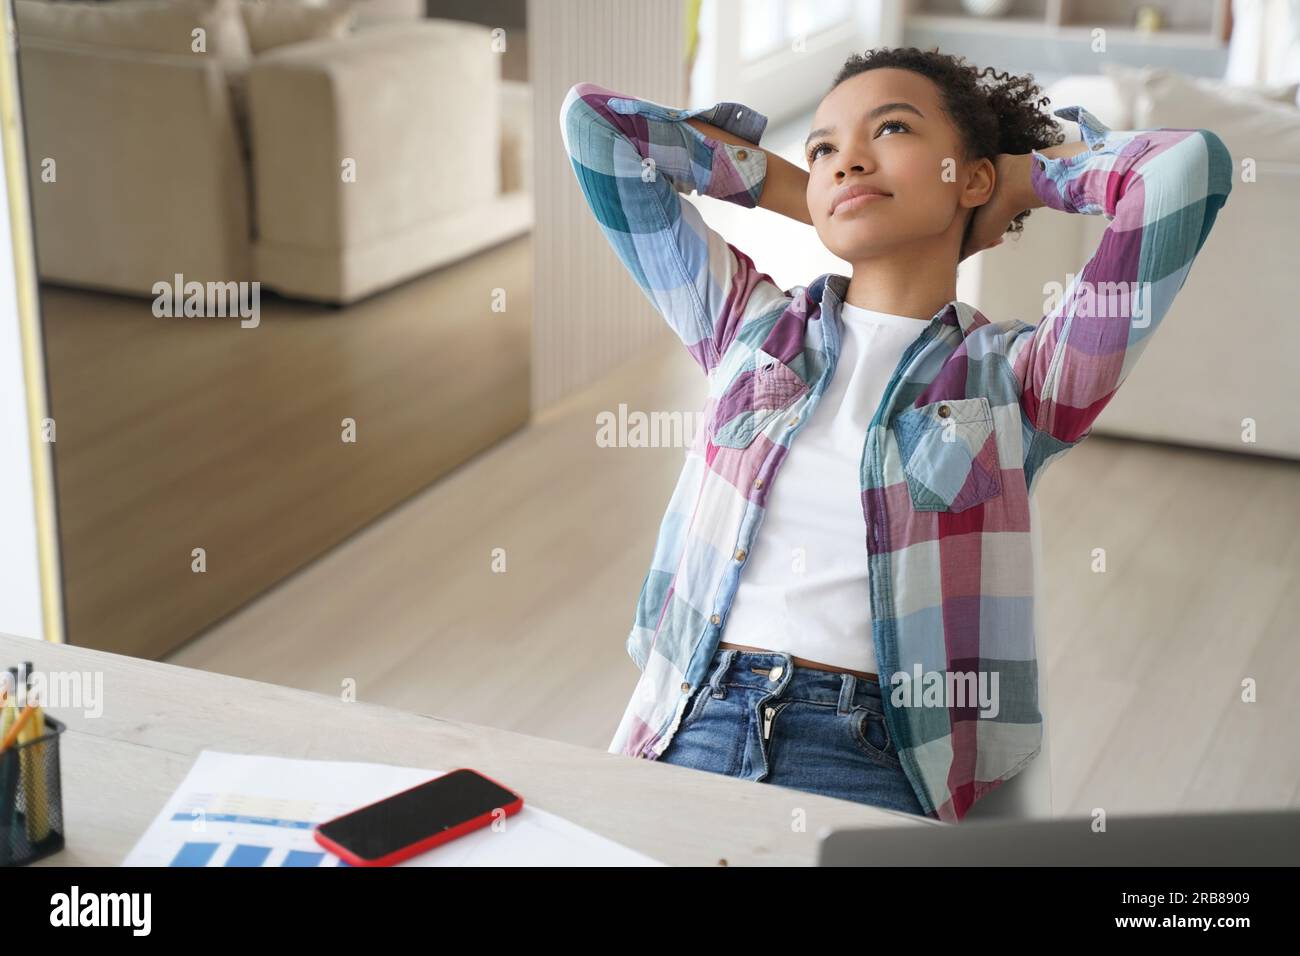 Ein träumiger, birassistischer Teenager macht eine Pause vom Lernen zu Hause, lehnt sich mit den Händen hinter dem Kopf zurück, in Gedanken verloren. Stockfoto